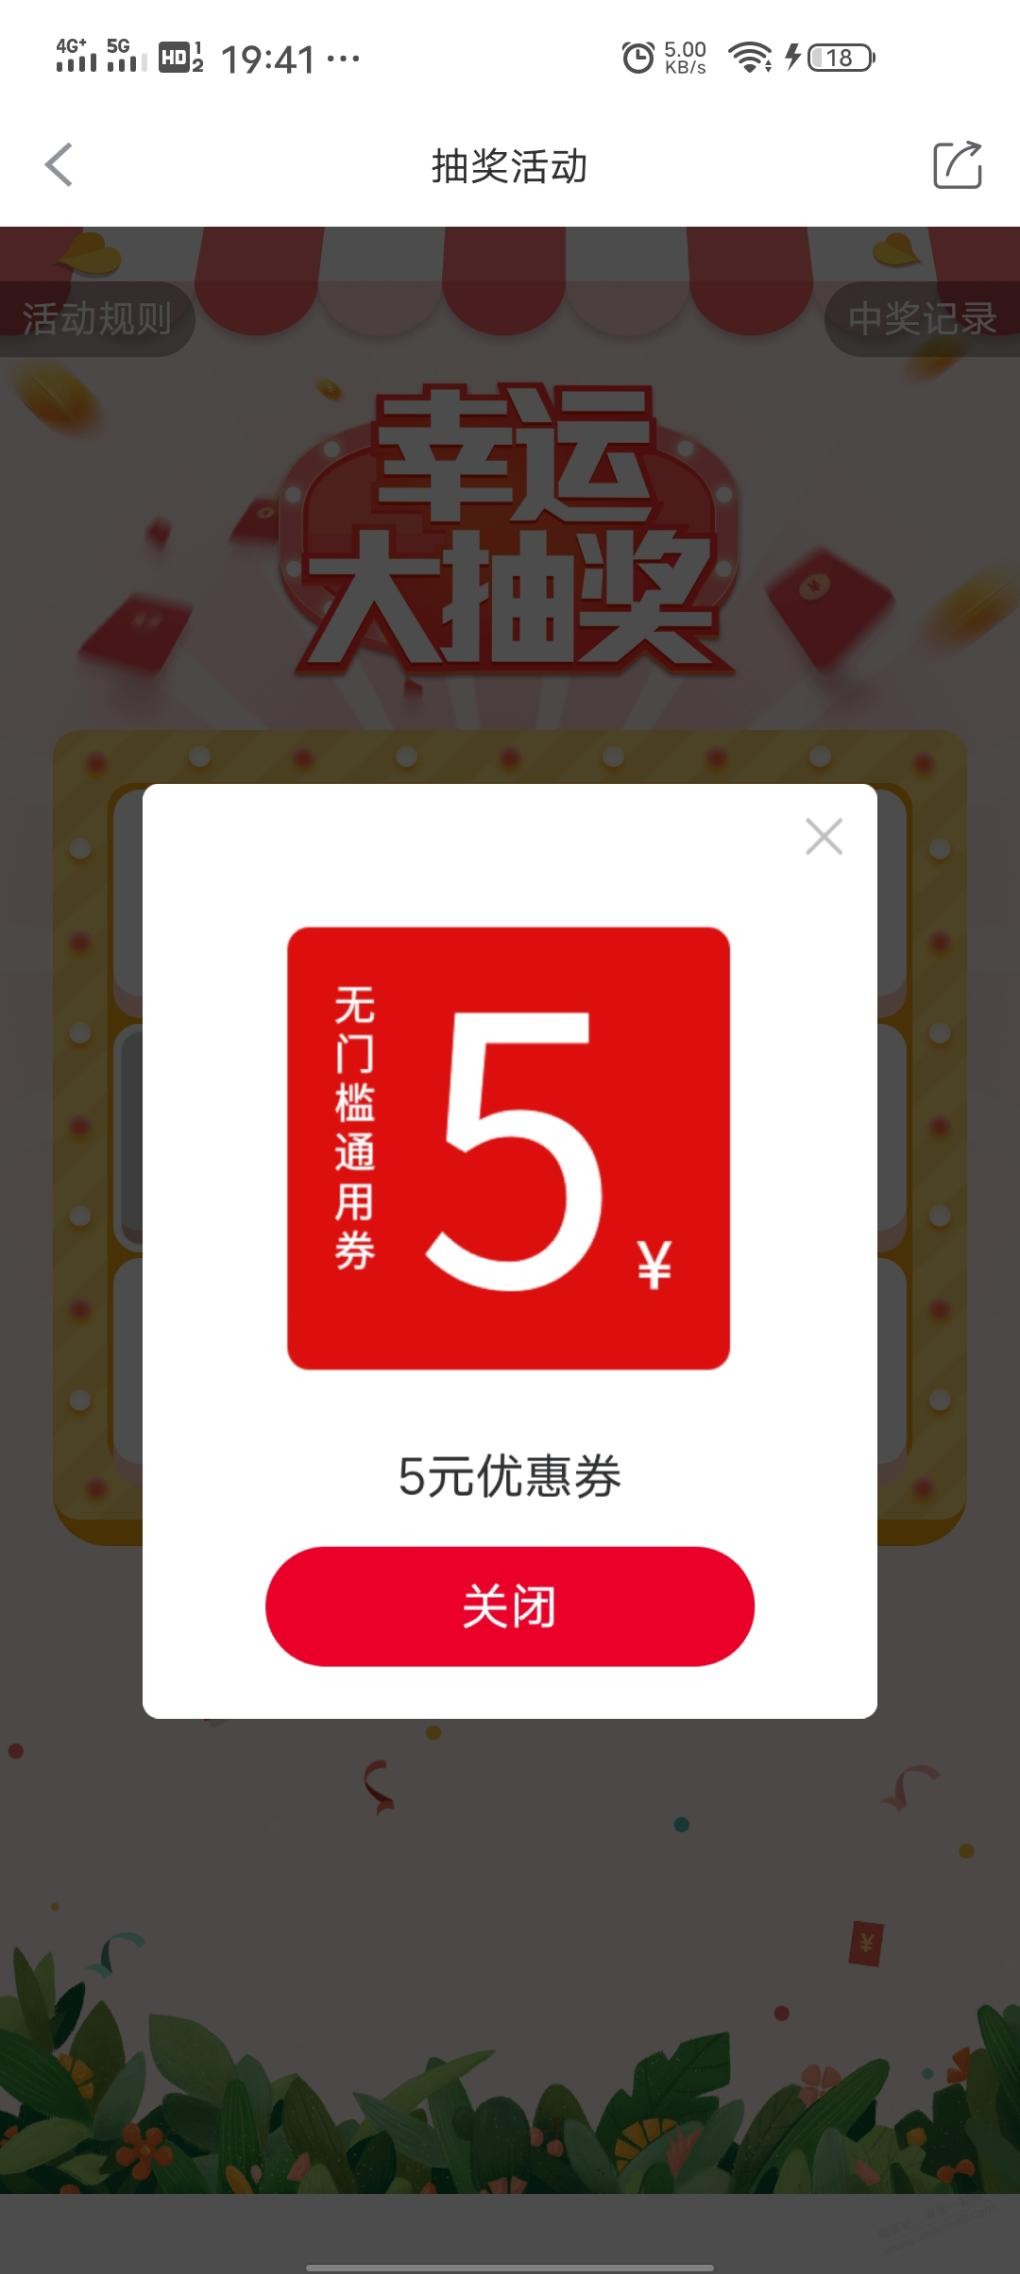 农夫山泉app首页可转盘抽奖-中了5无门槛-有效期11月底-惠小助(52huixz.com)